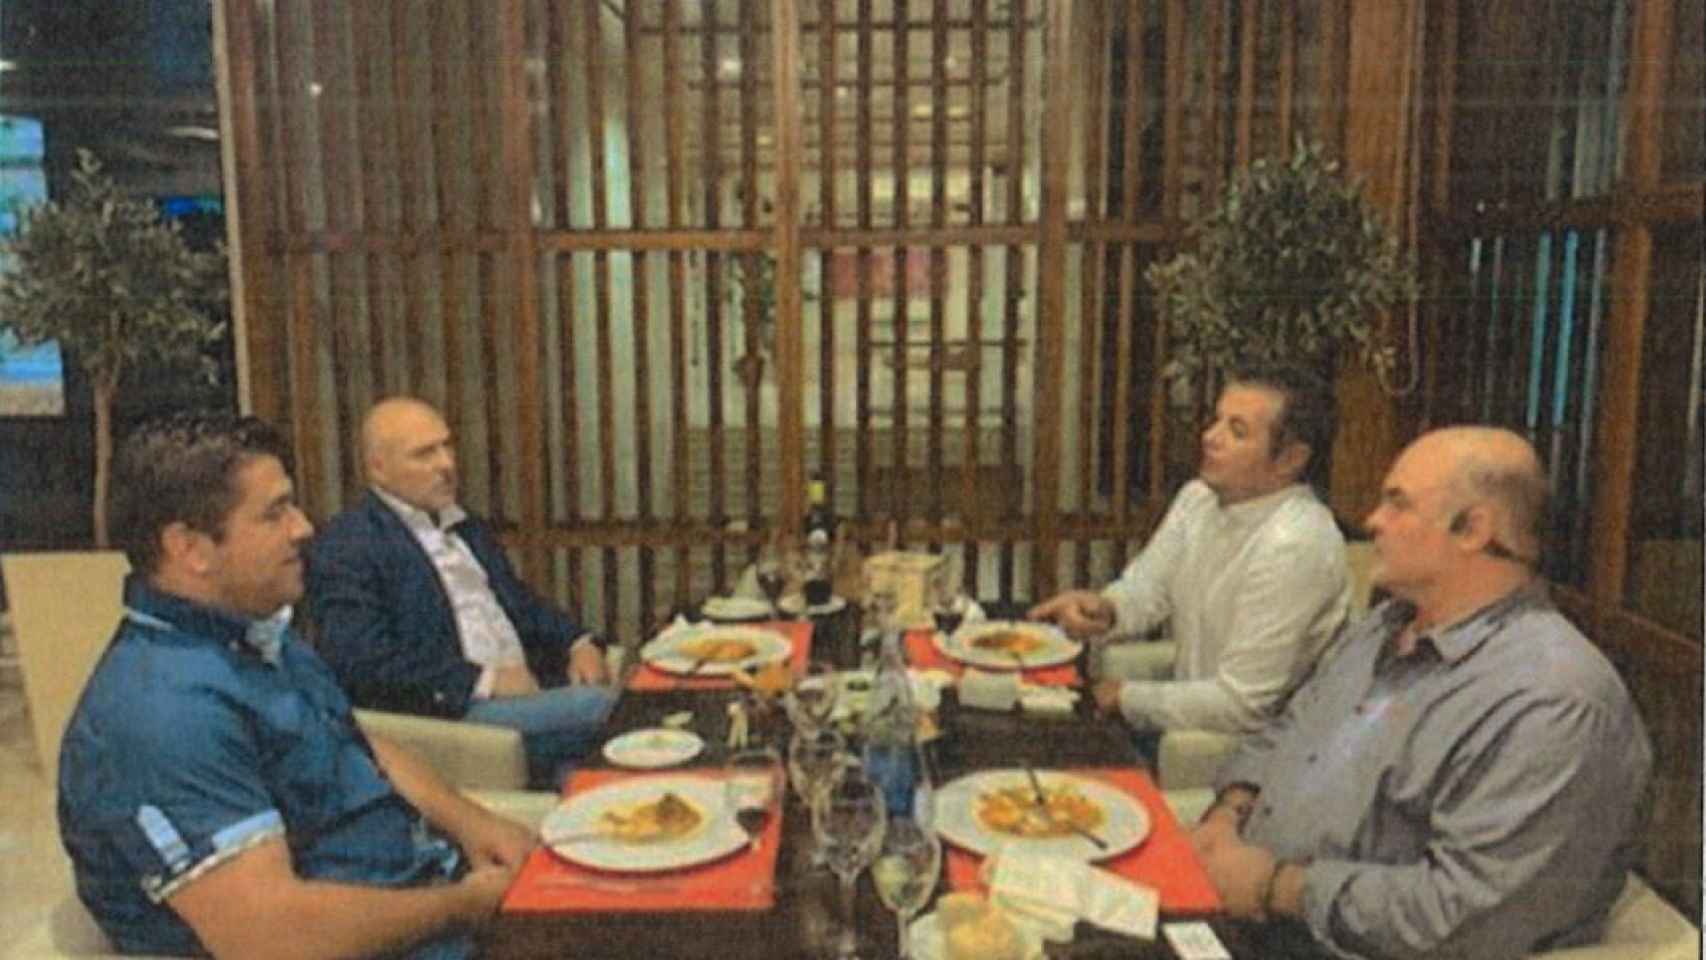 Reunión de los investigados Tacoronte con Montesdeoca, Taishet Fuentes con el abogado Plácido Alonso.